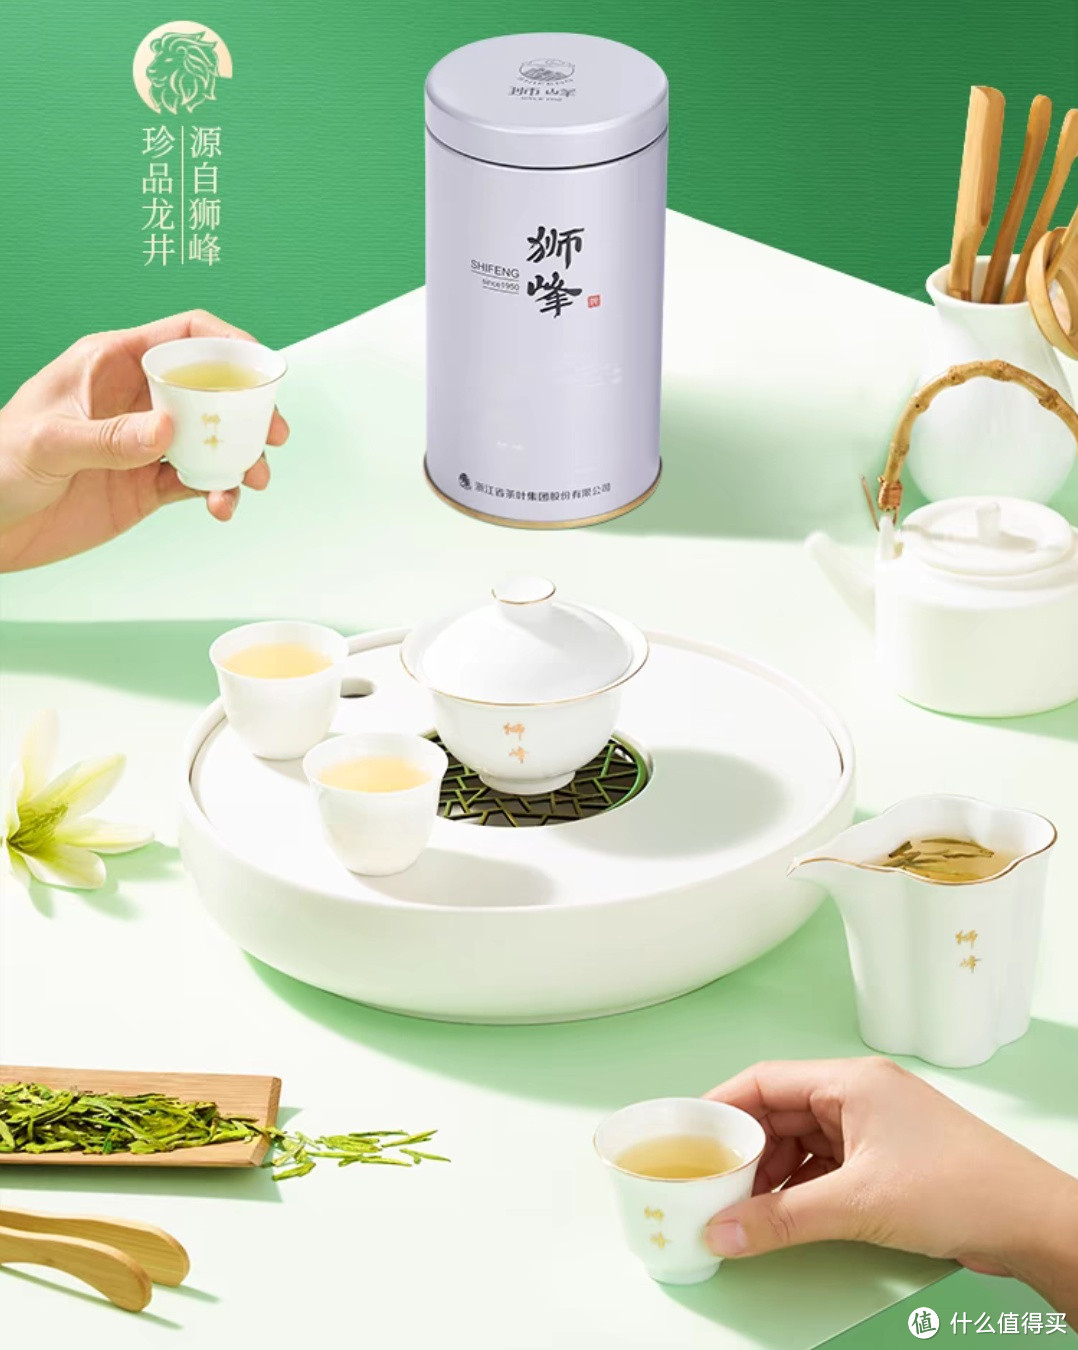 一杯春茶为春天加酚，春天好茶分享狮峰牌龙井茶叶杭州雨前浓香春绿茶。